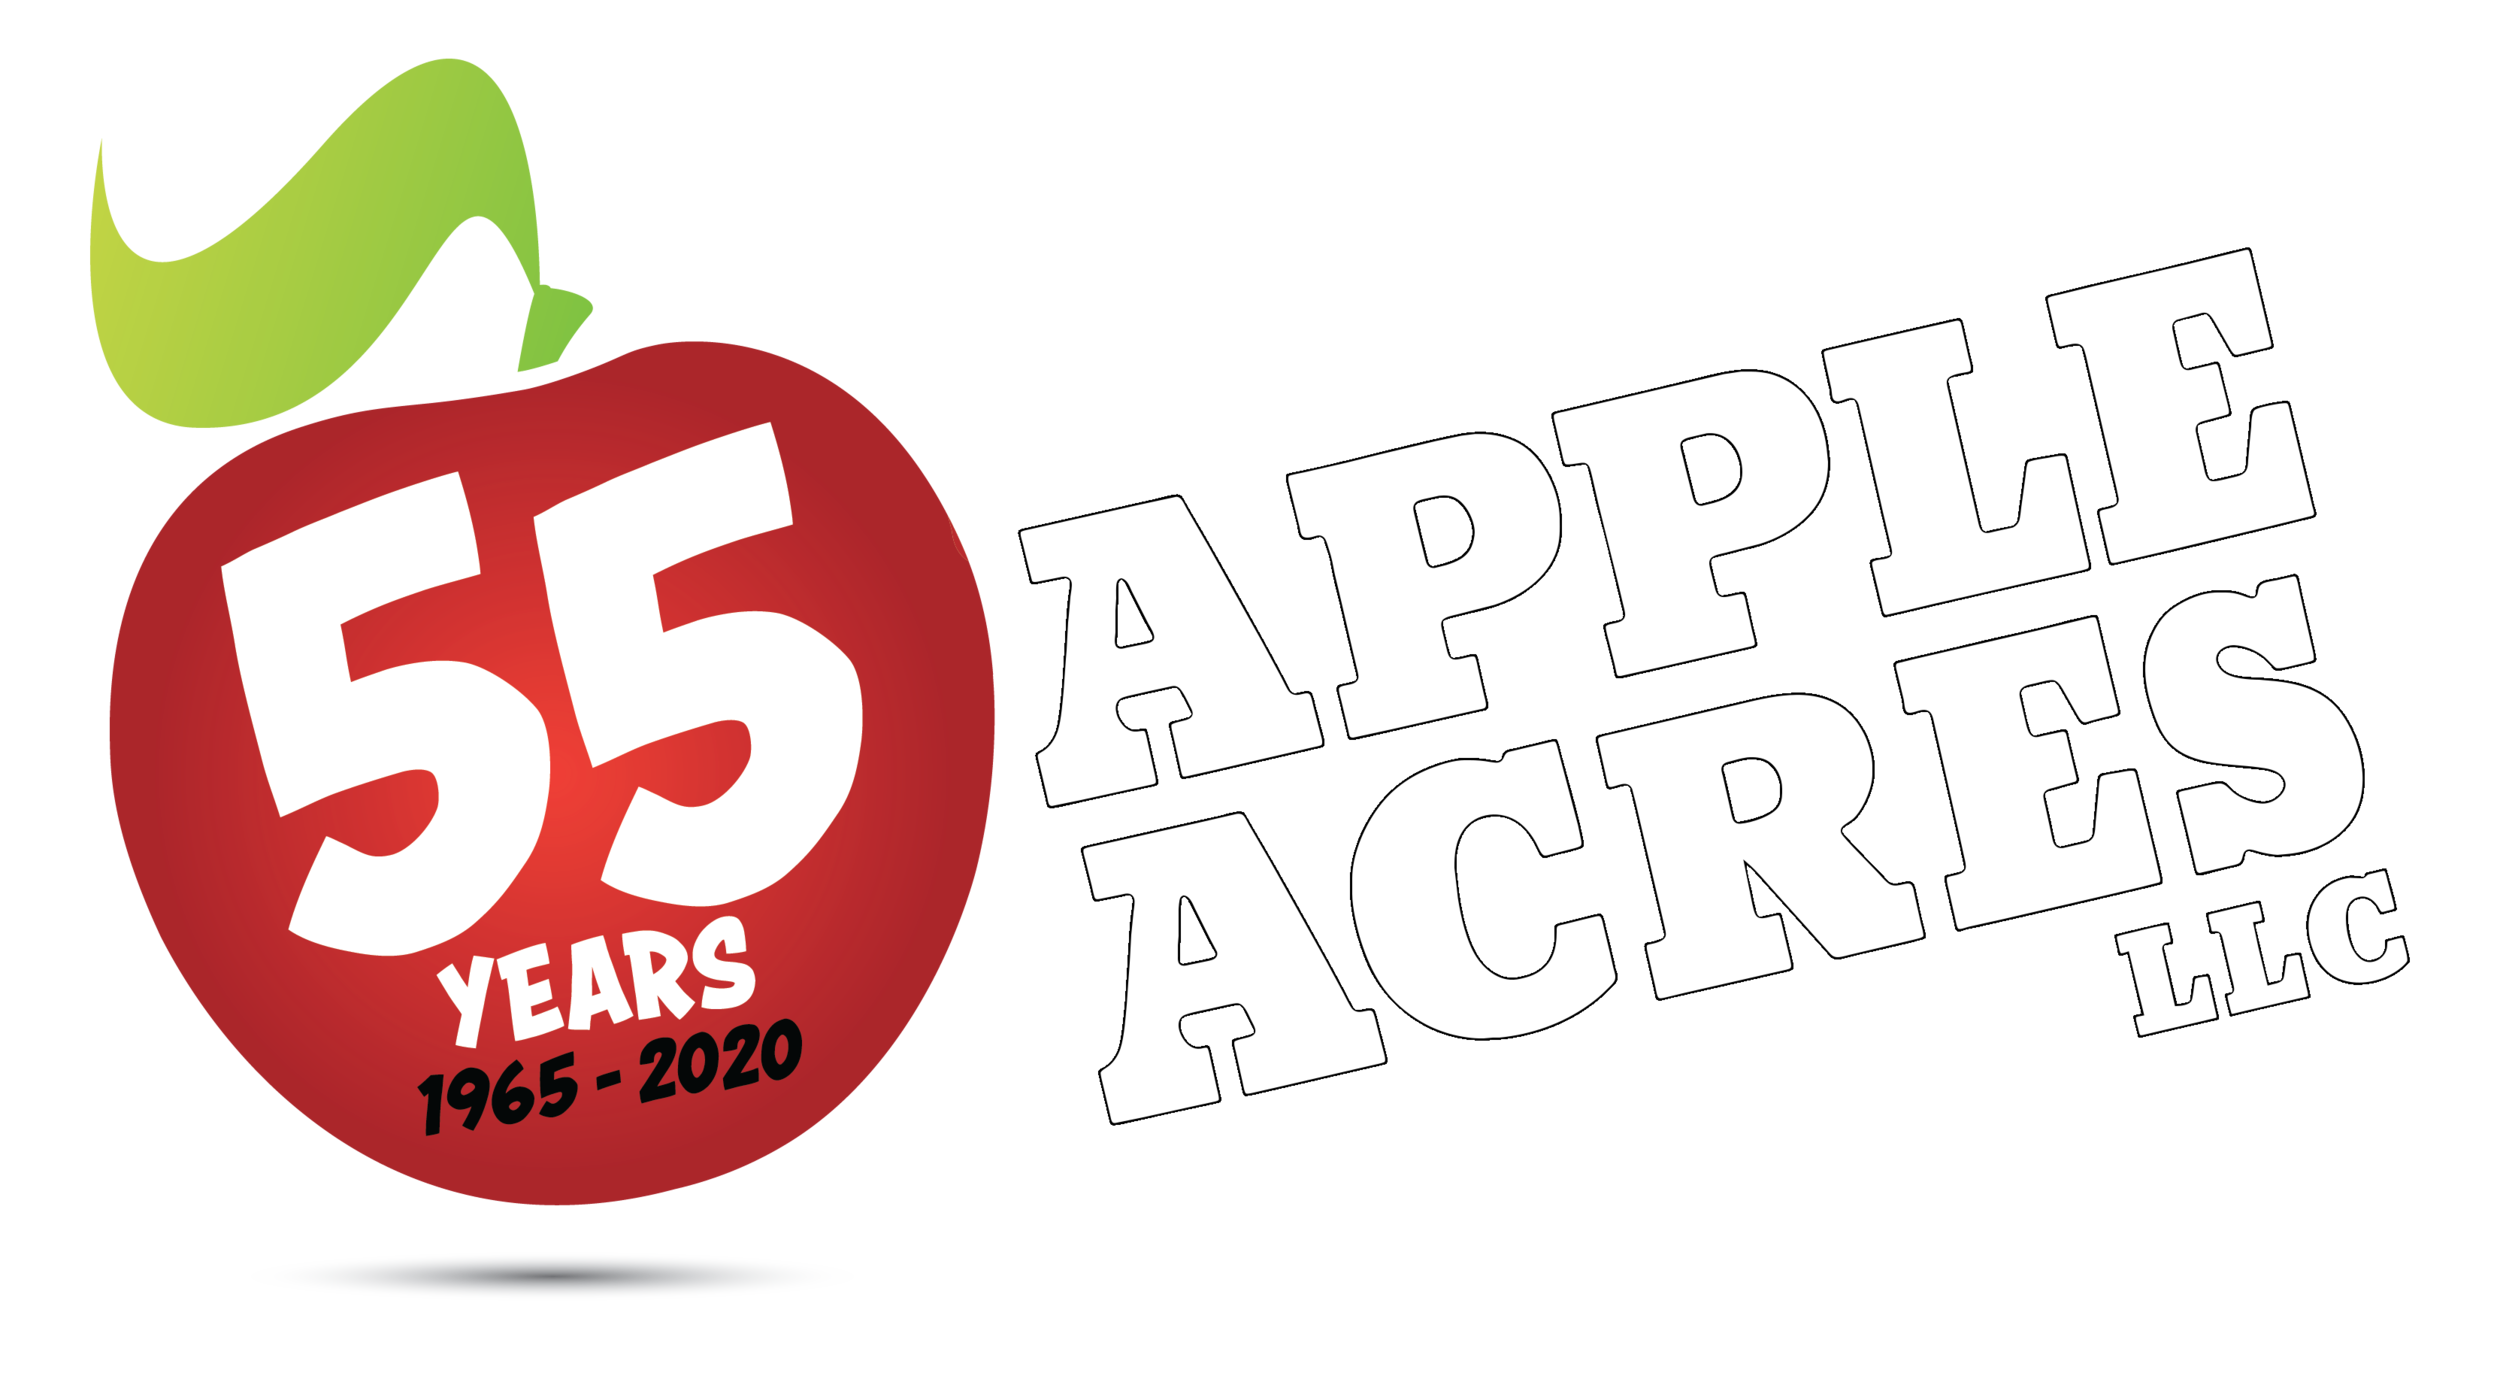 Apple Acres